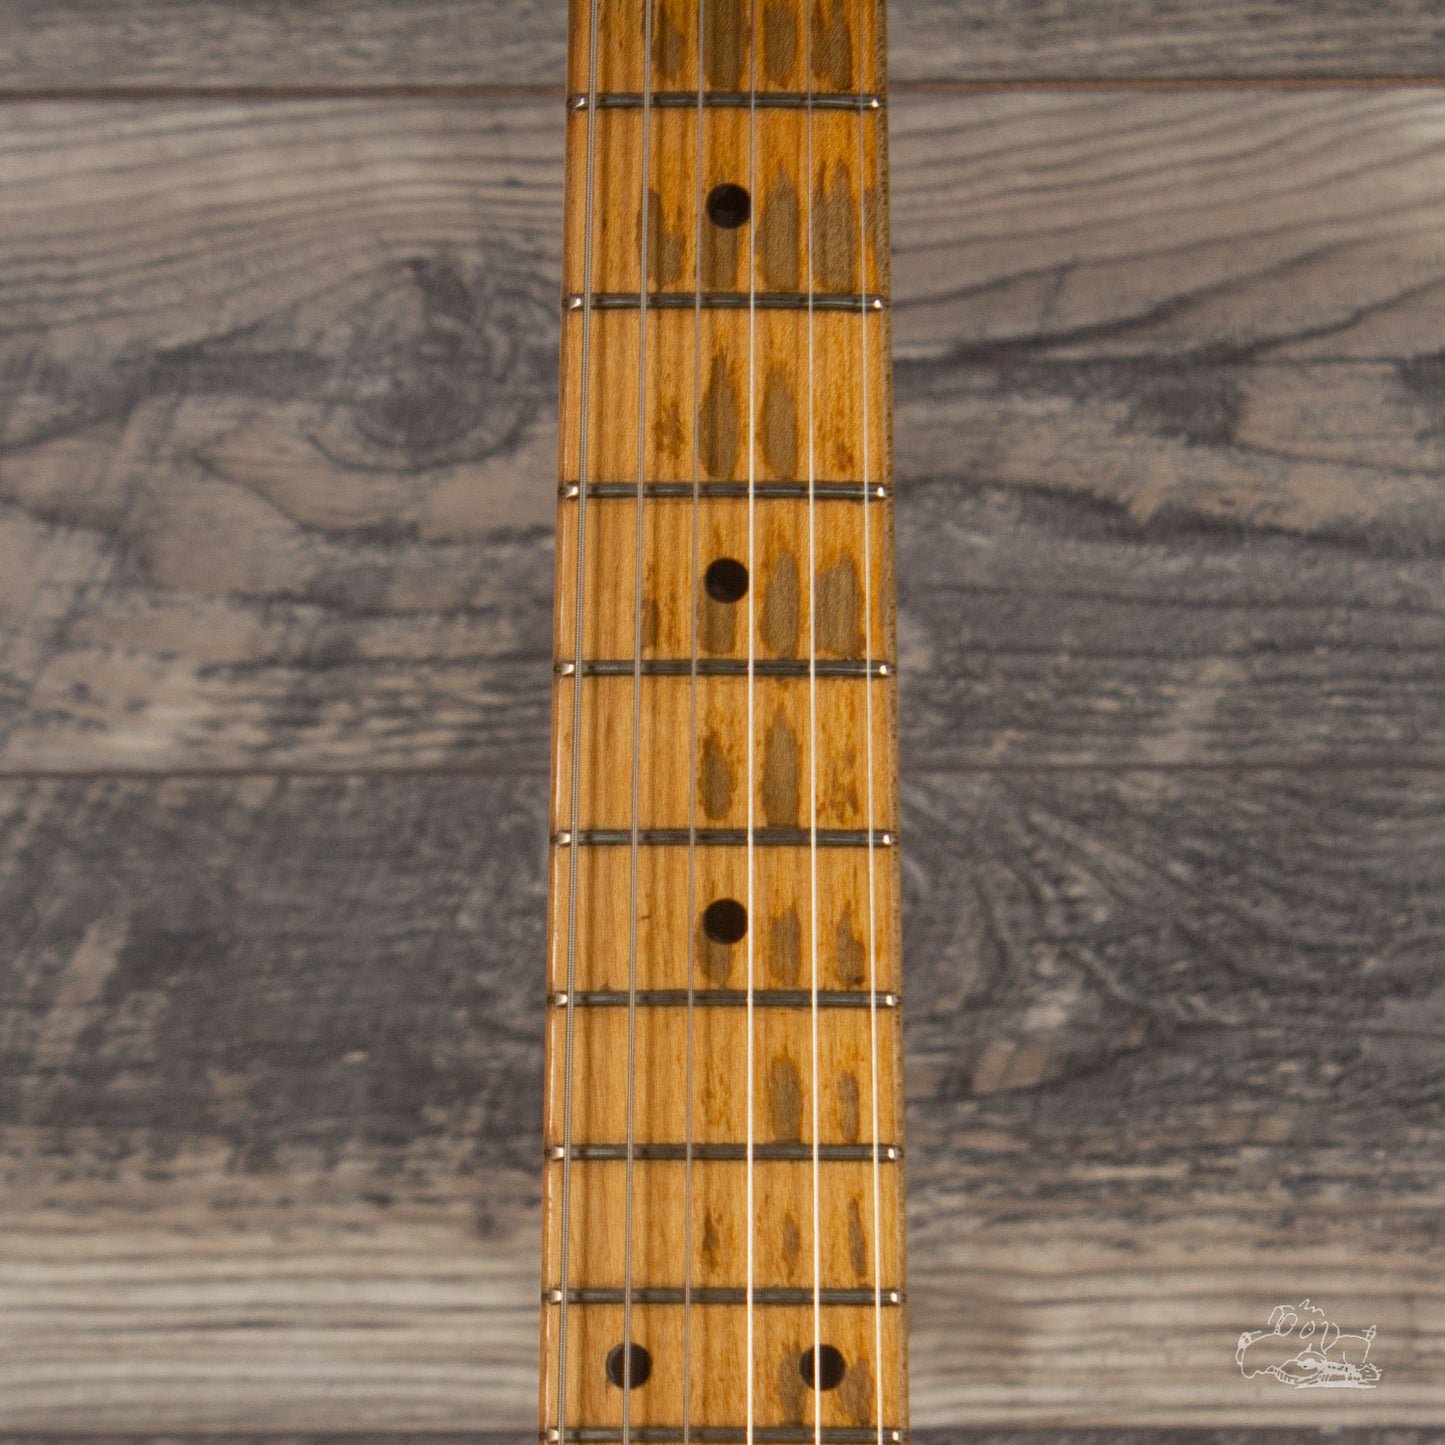 1957 Fender Stratocaster - Non-tremolo Model